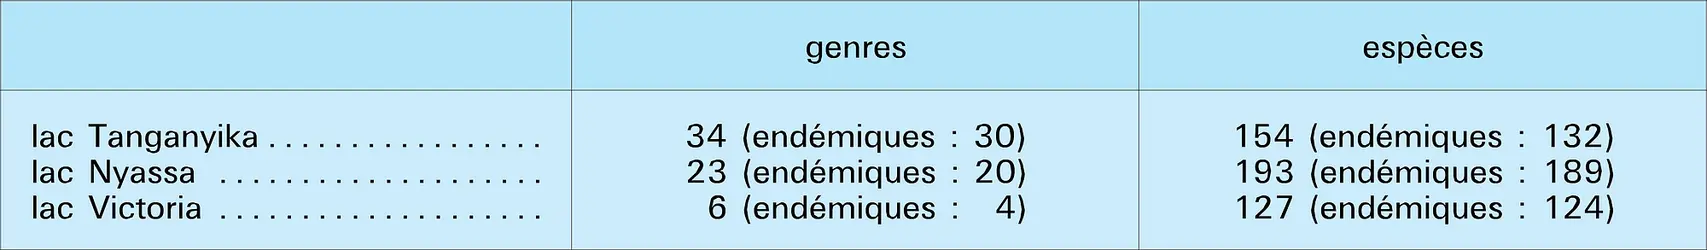 Biogéographie - crédits : Encyclopædia Universalis France